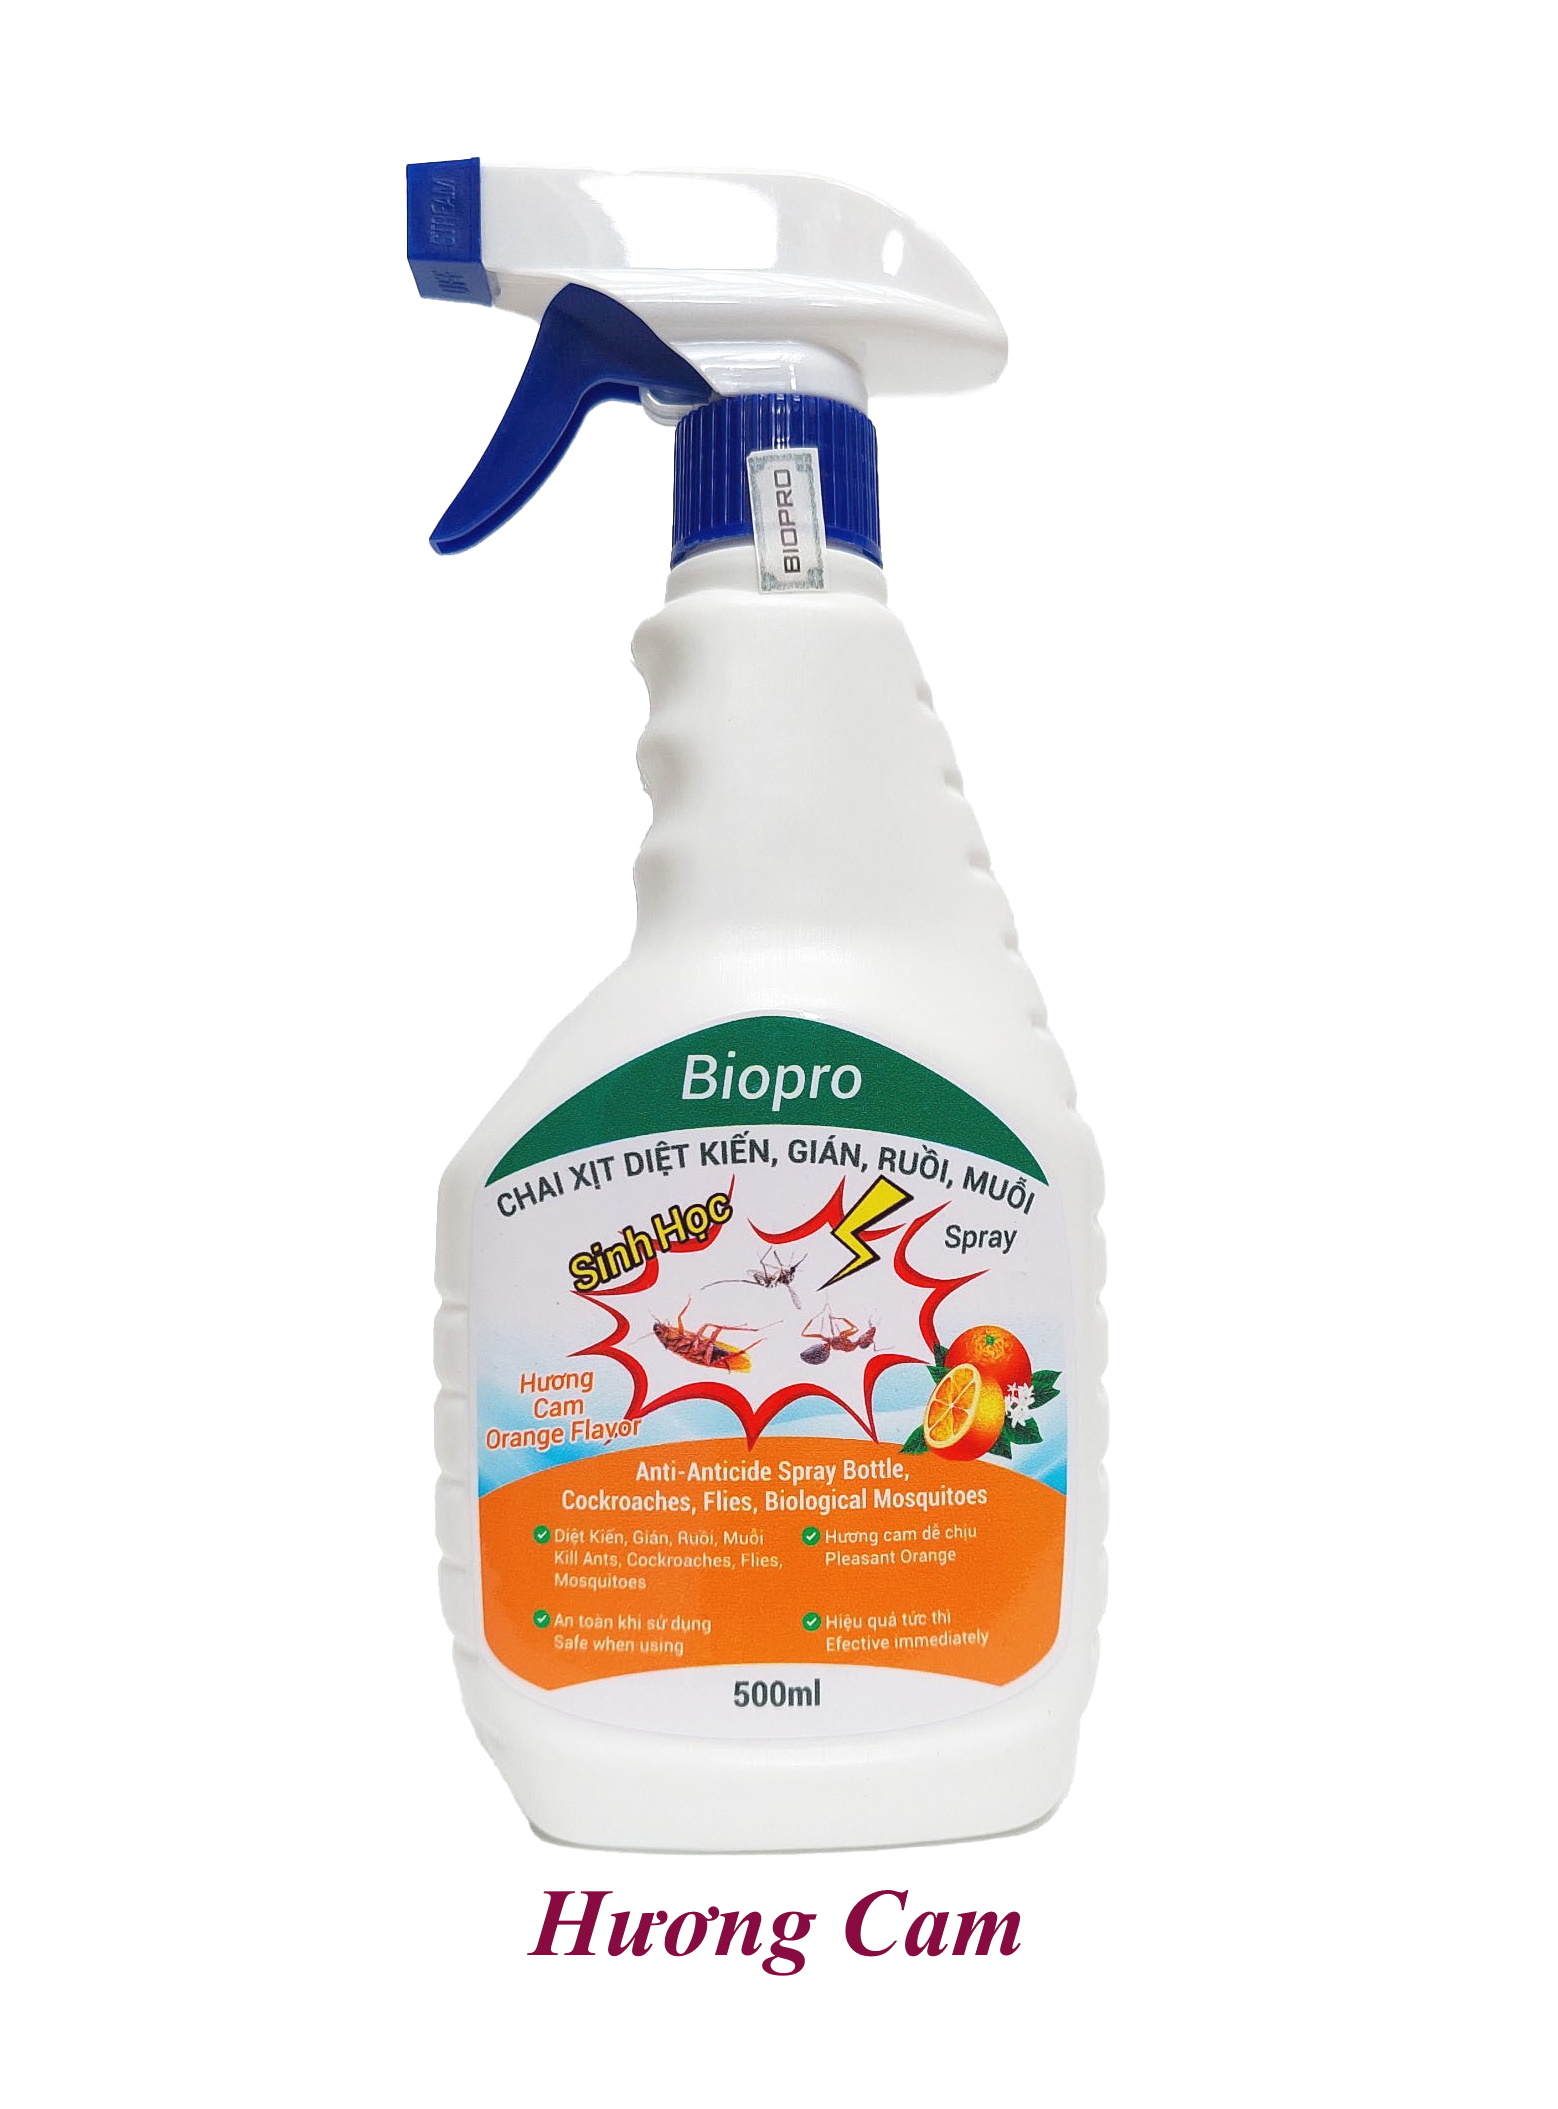 Thuốc xịt sinh học Diệt kiến Diệt gián Diệt ruồi Diệt muỗi Biopro Hương cam dịu nhẹ, an toàn, hiệu quả dài lâu